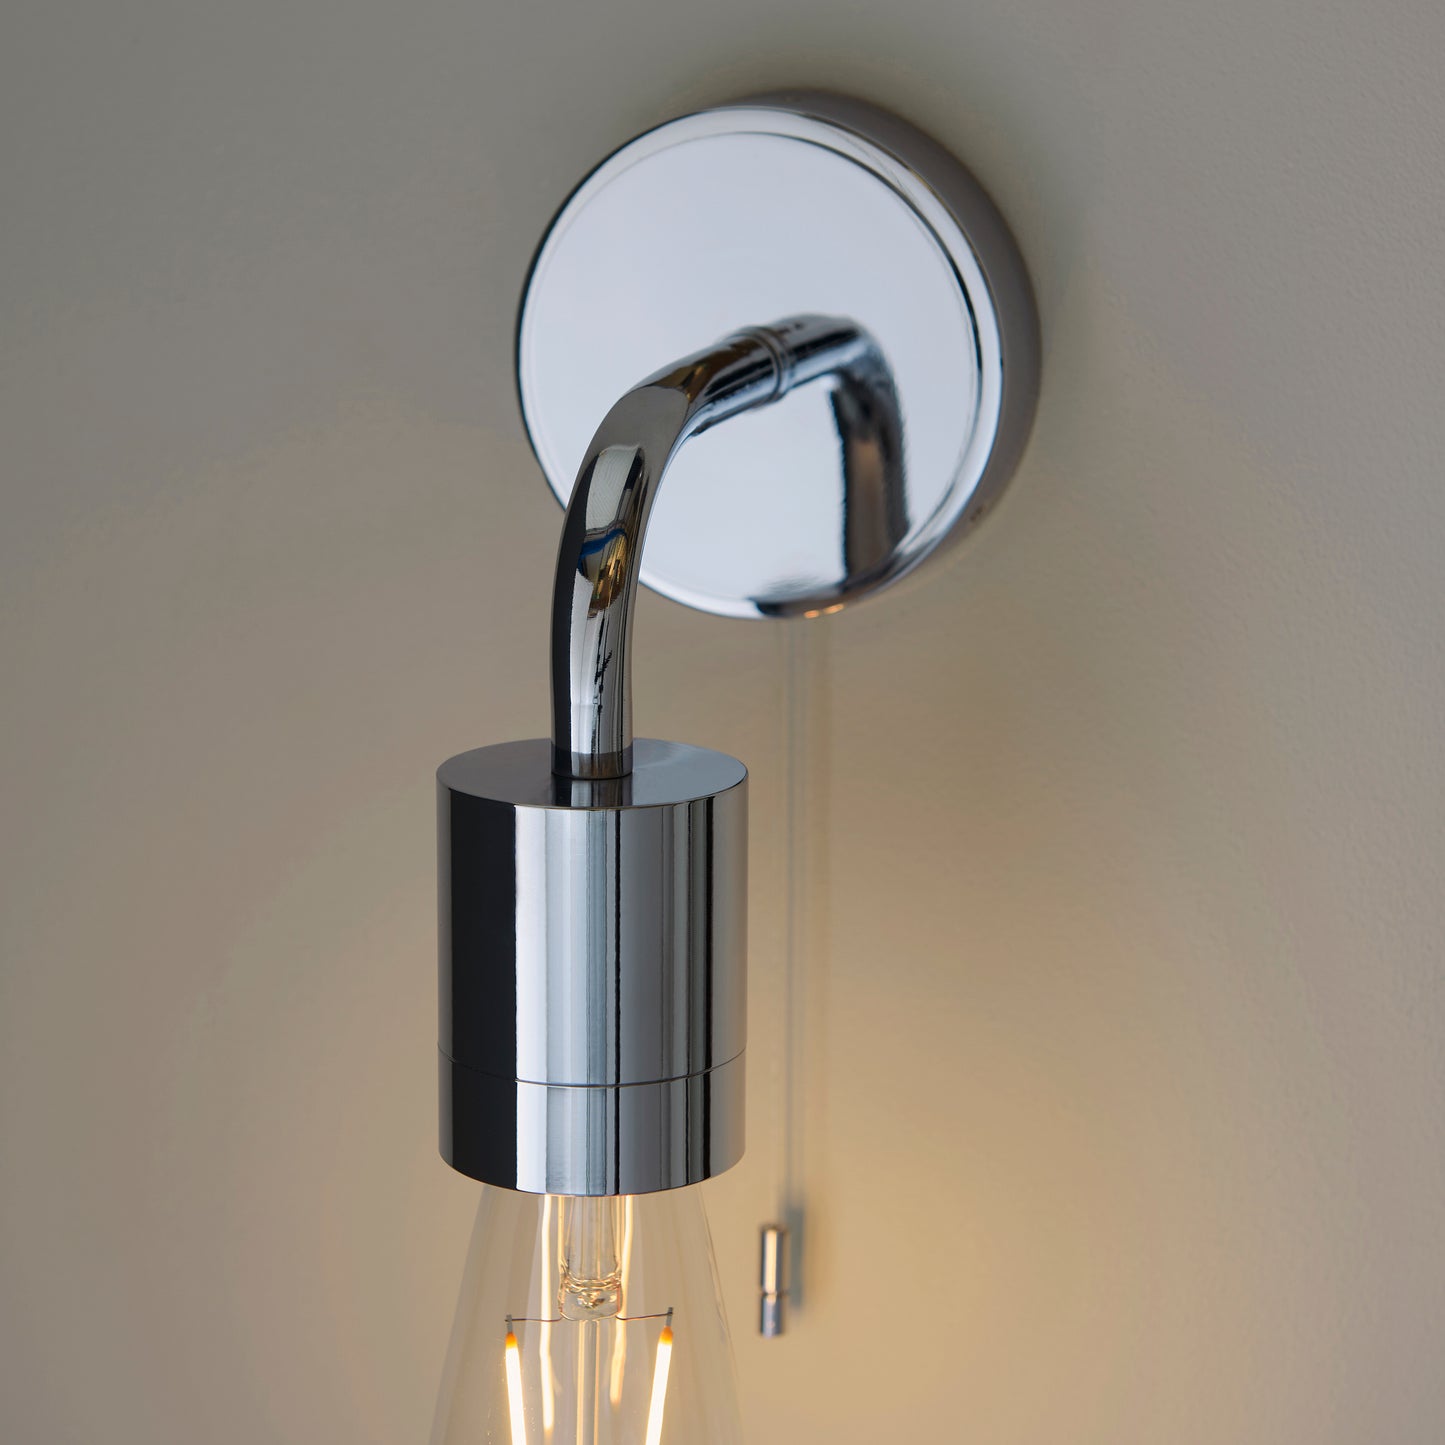 Polished Chrome Sleek One Lamp Bathroom Wall Light - ID 11650